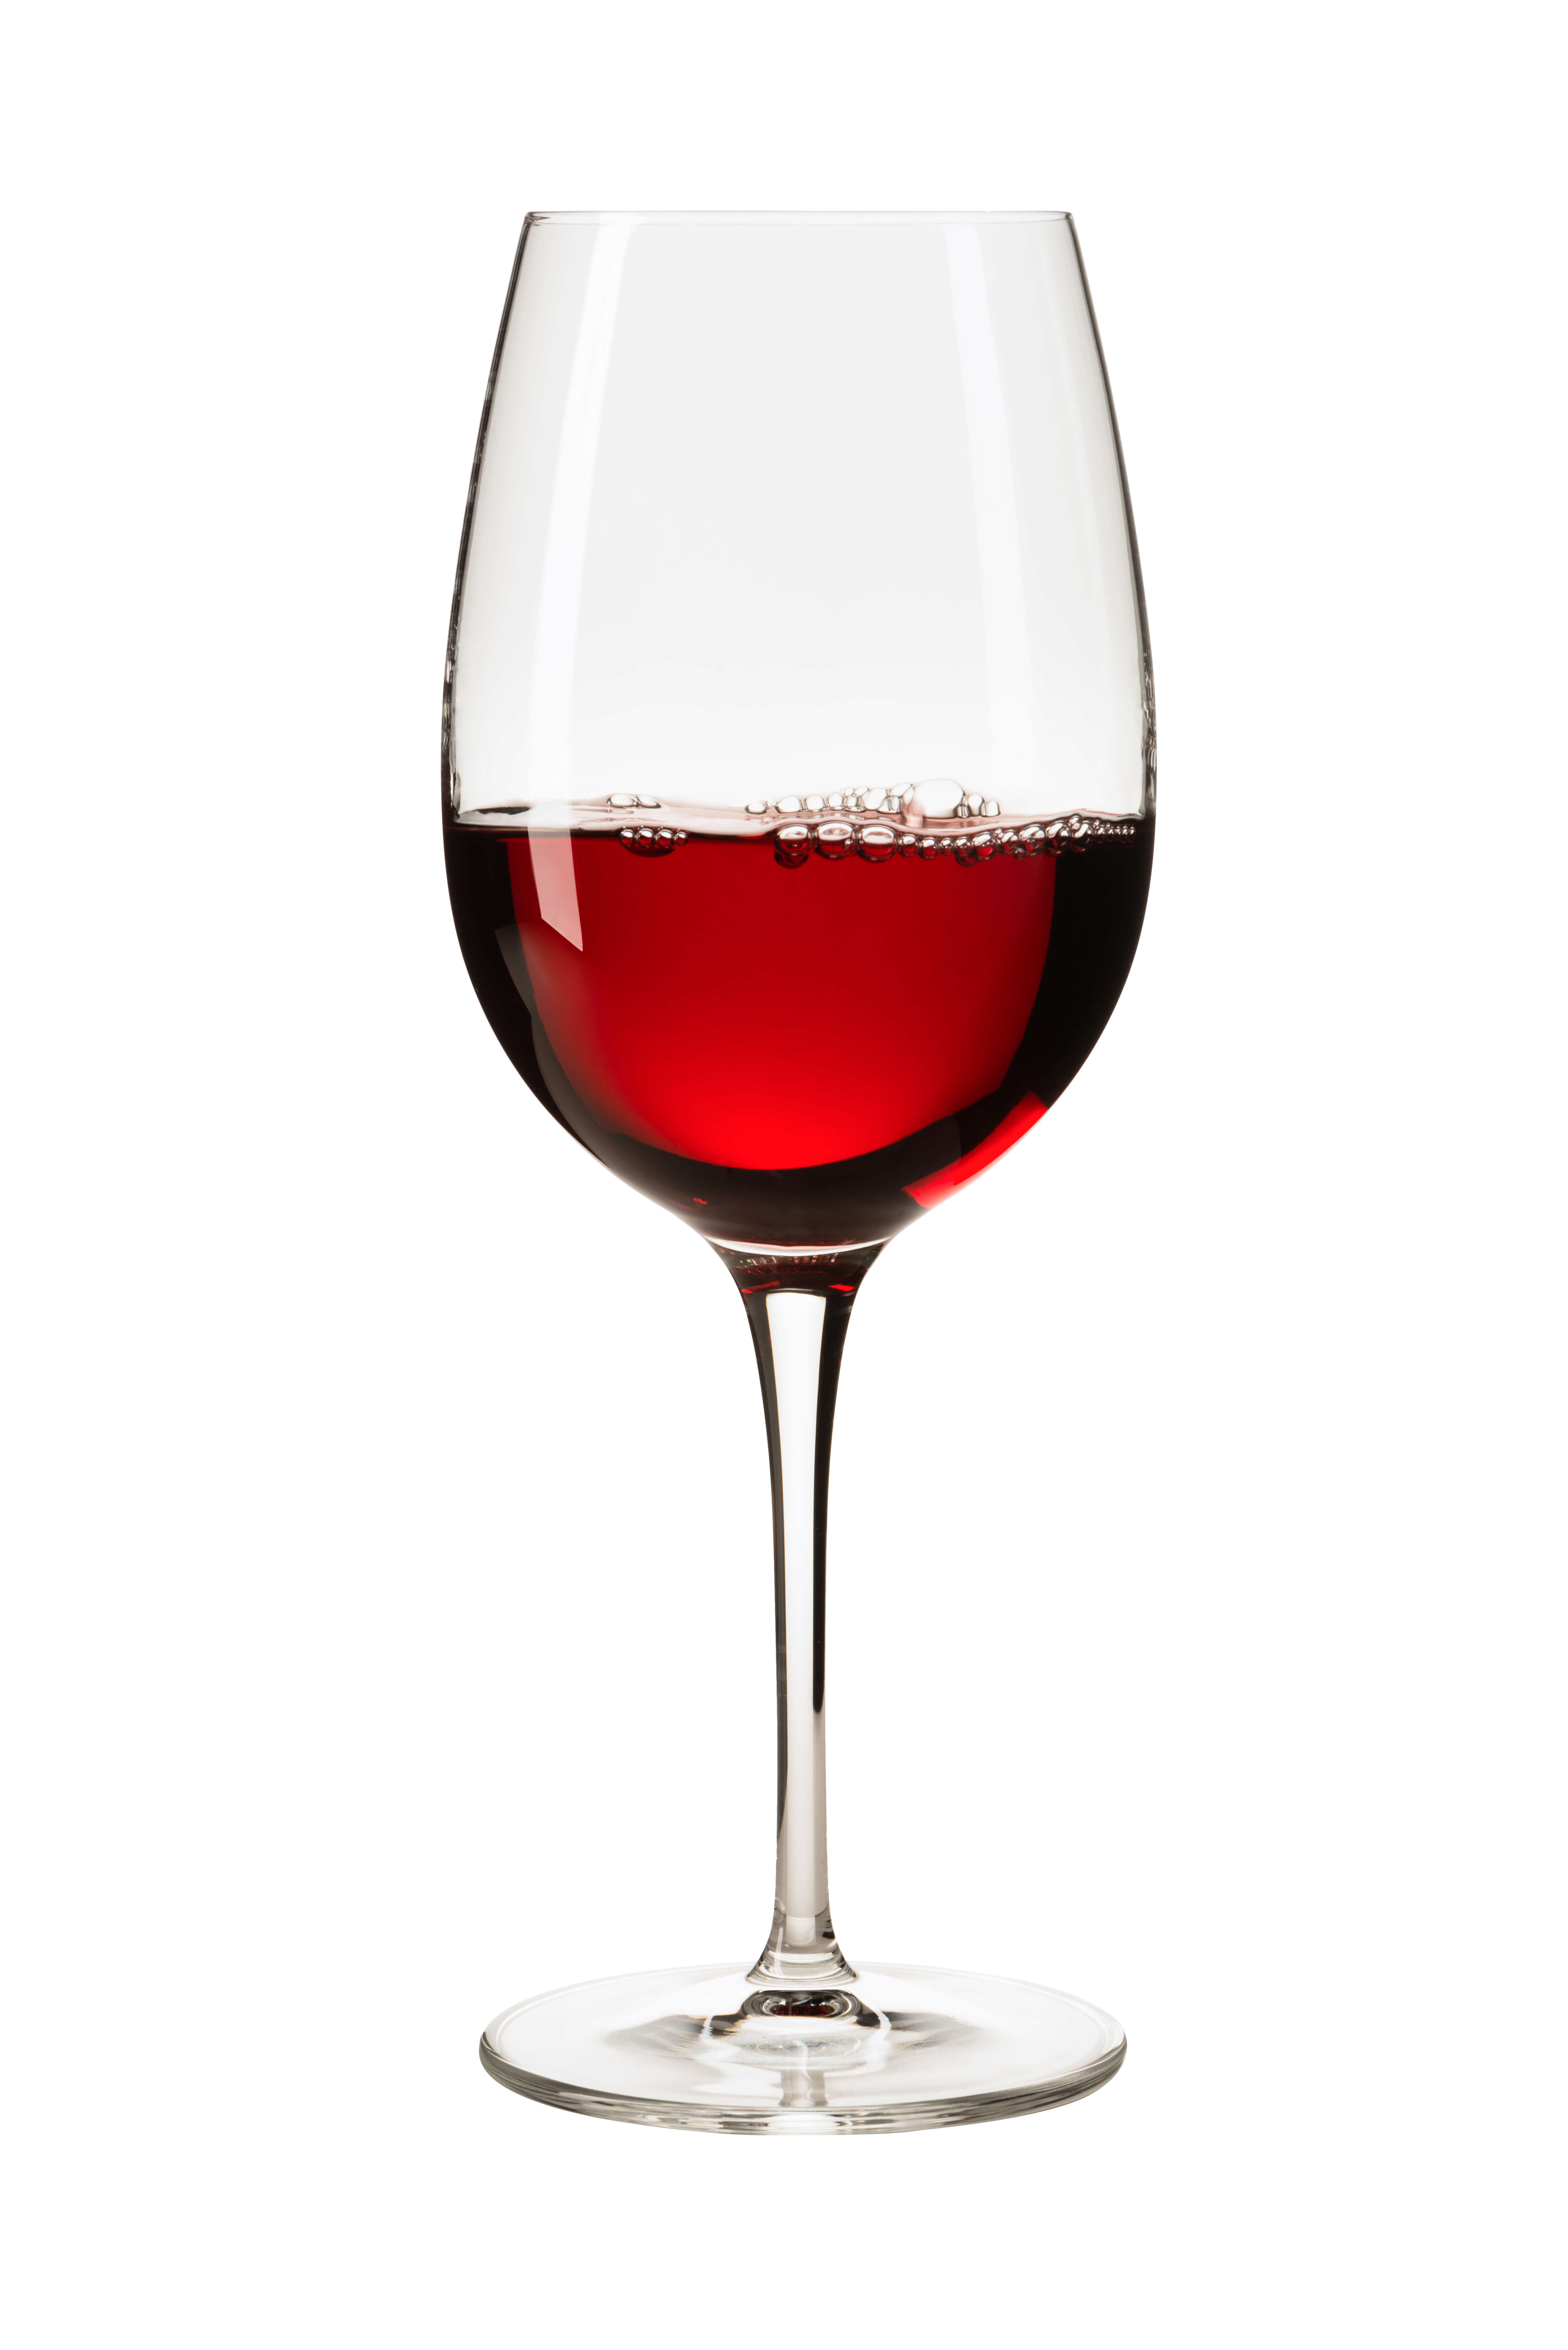 Cabernet Sauvignon wine glass